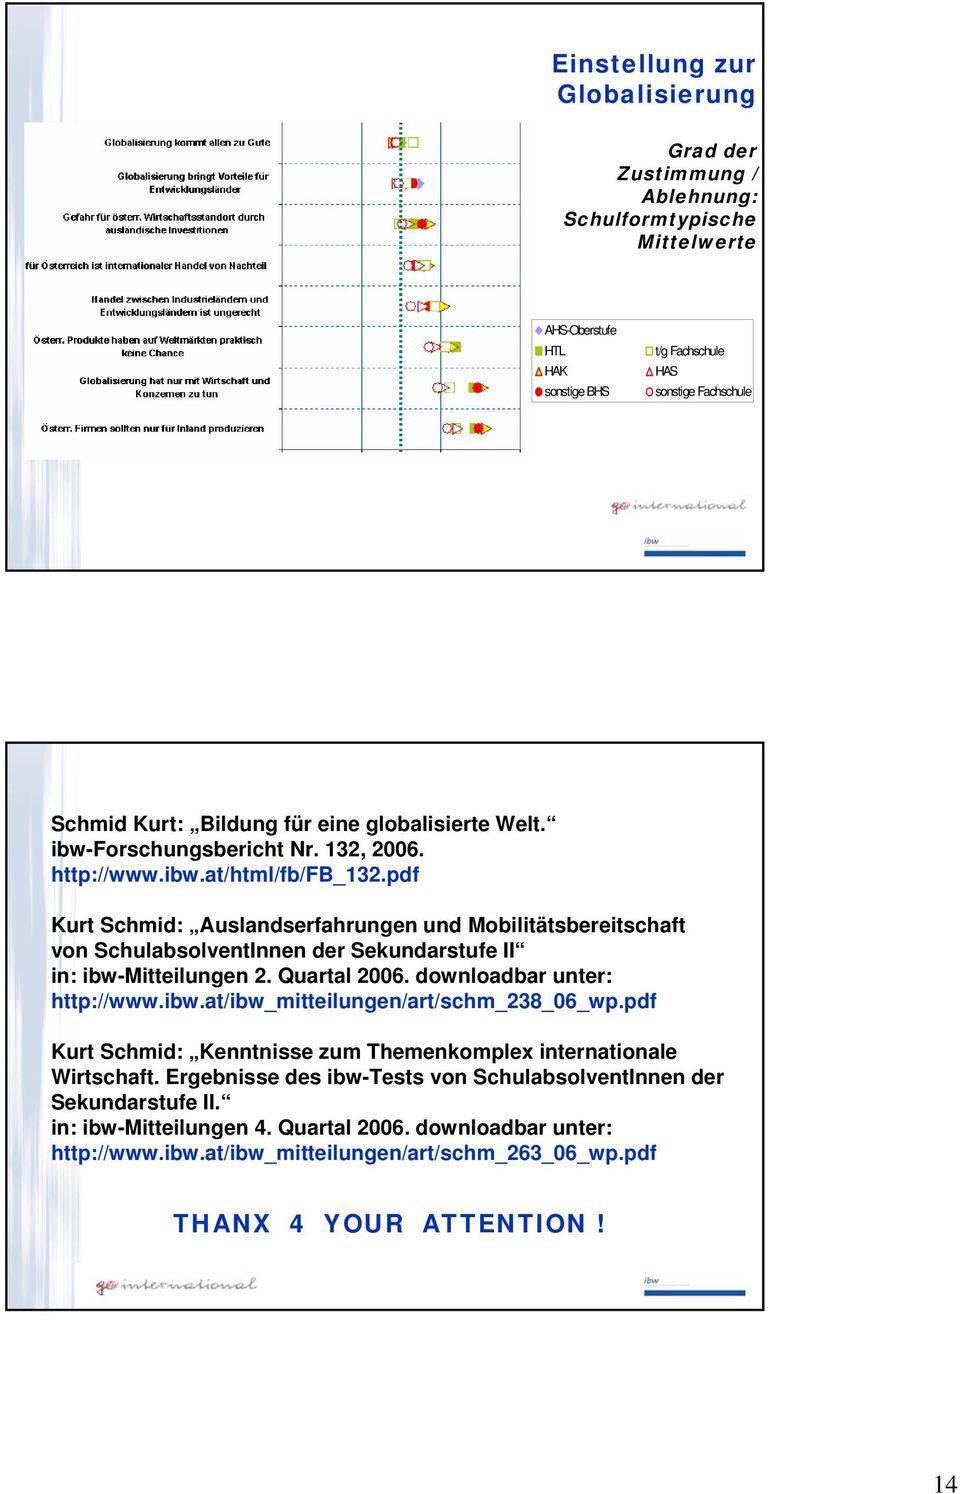 pdf Kurt Schmid: Auslandserfahrungen und Mobilitätsbereitschaft von SchulabsolventInnen der Sekundarstufe II in: ibw-mitteilungen 2. Quartal 2006. downloadbar unter: http://www.ibw.at/ibw_mitteilungen/art/schm_238_06_wp.